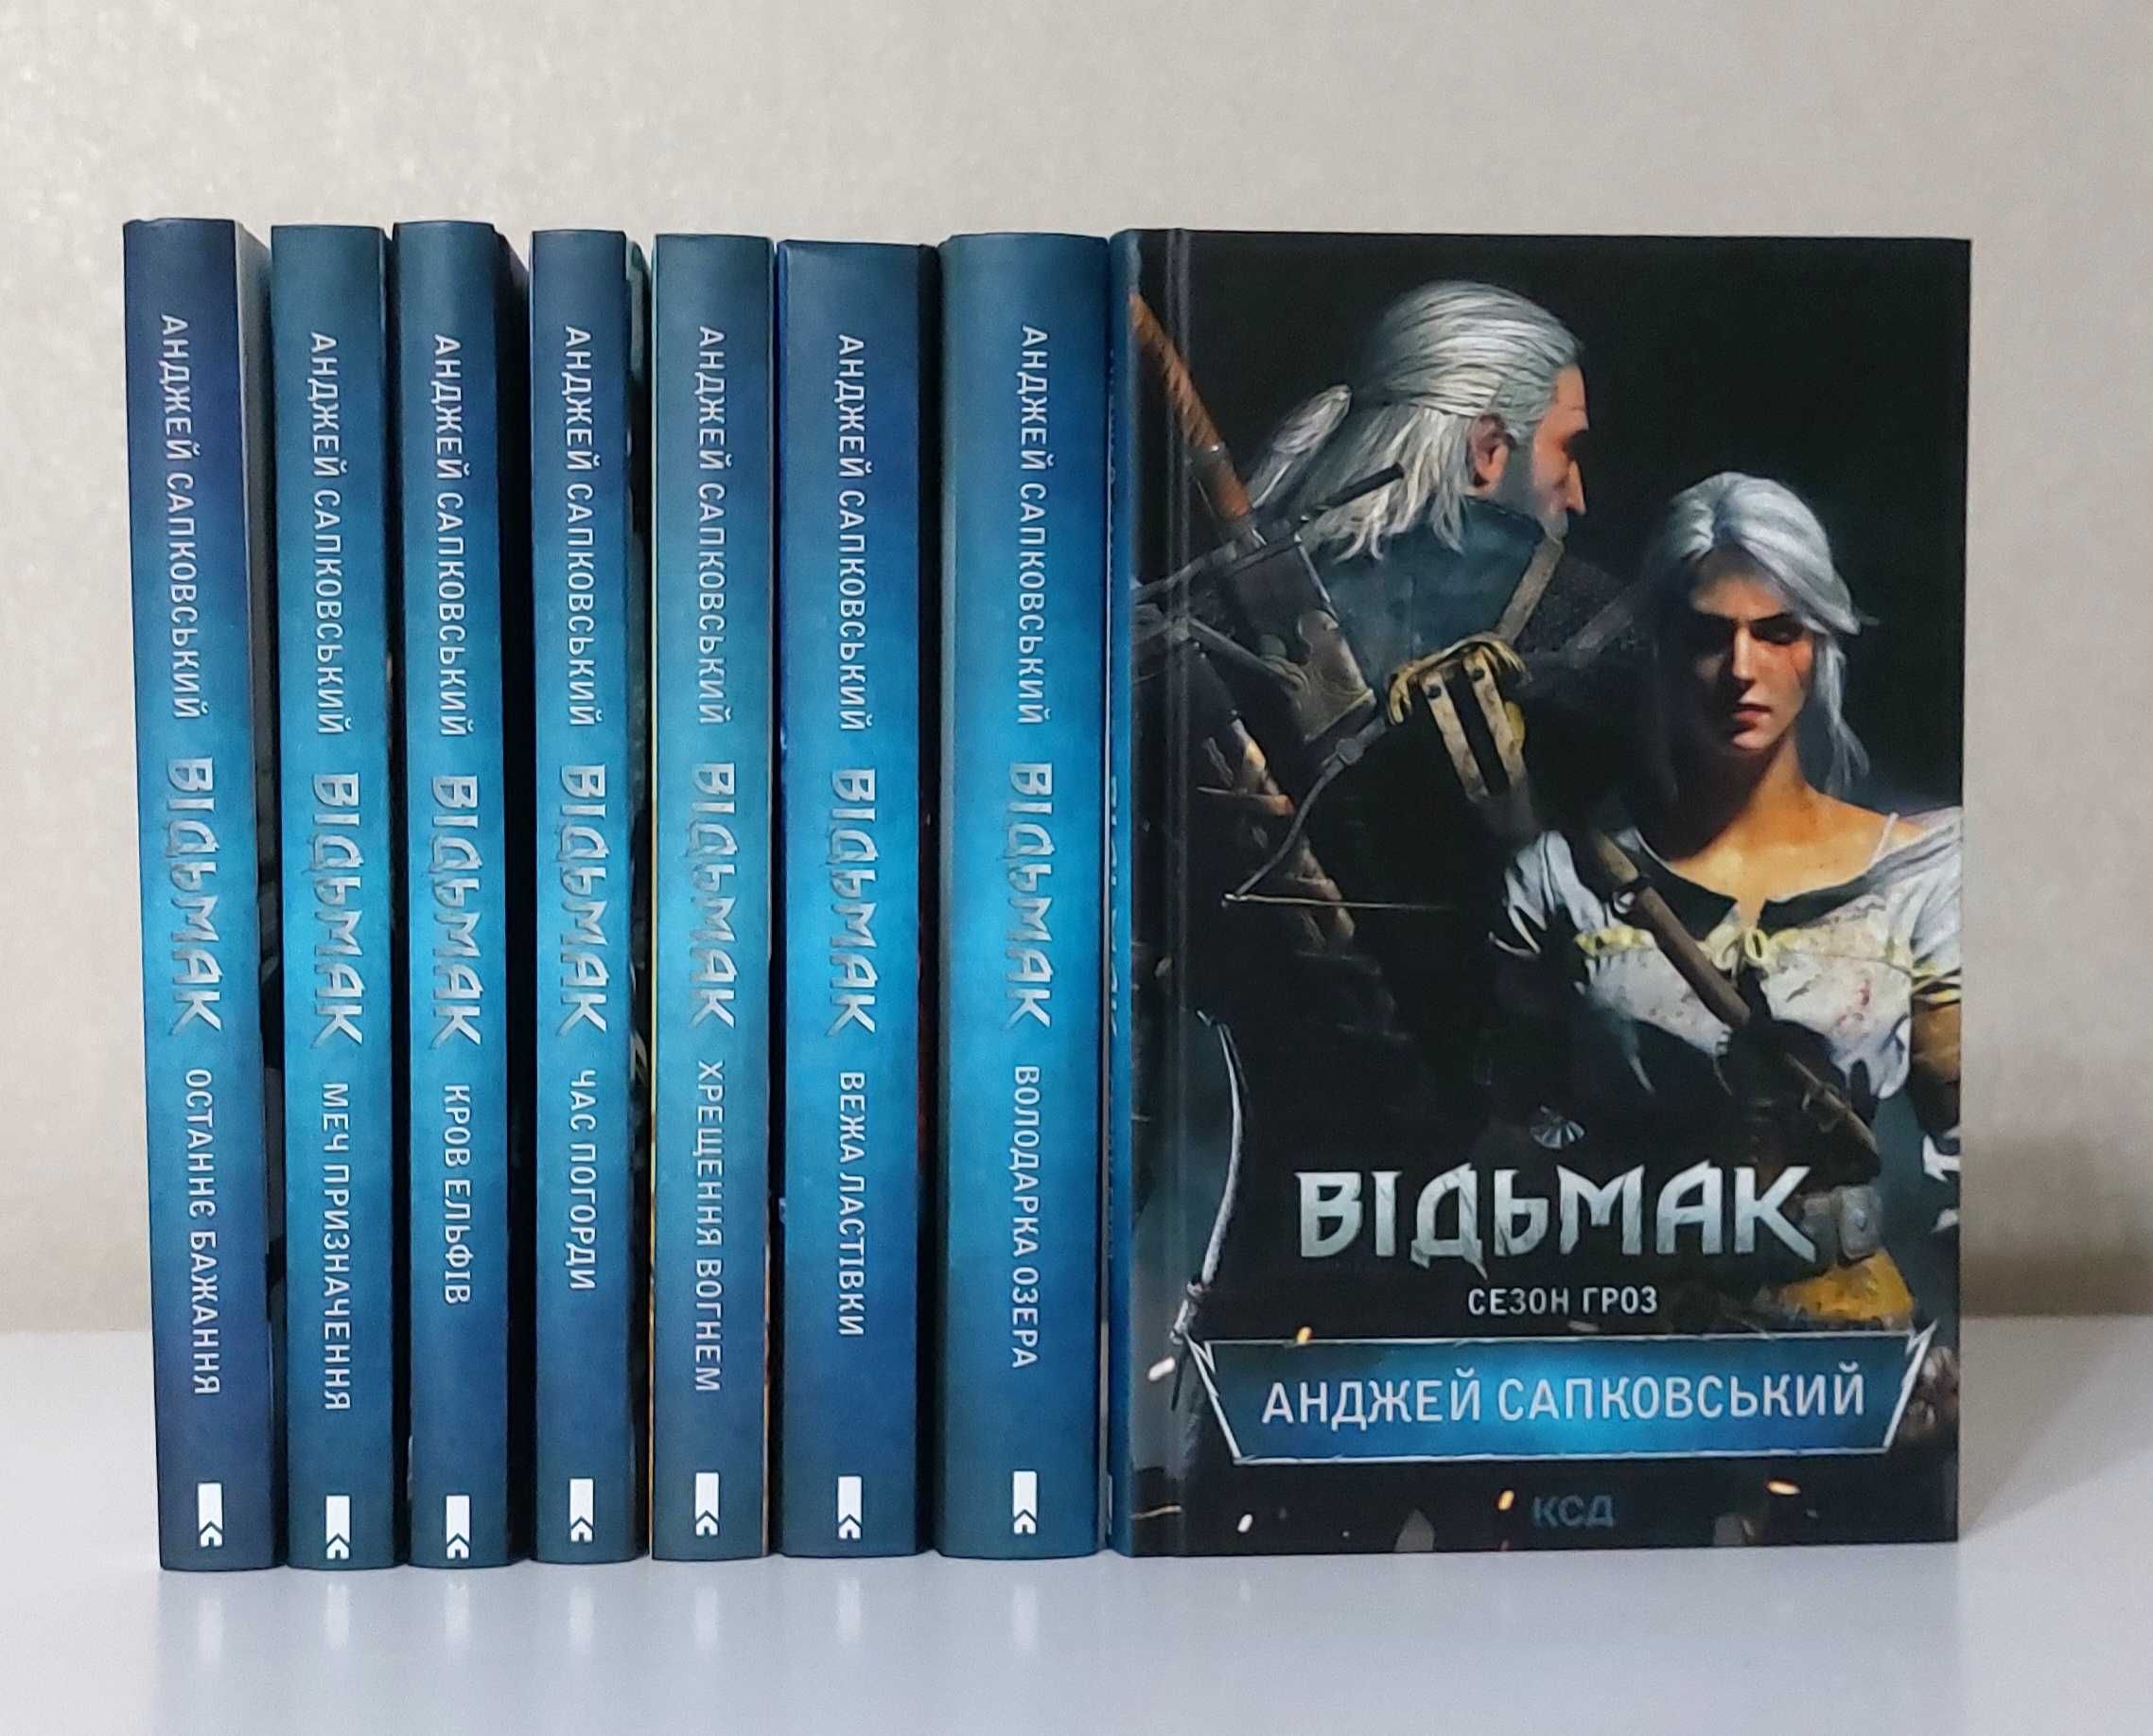 Комплект книг "Відьмак" 8 книг Анджей Сапковський